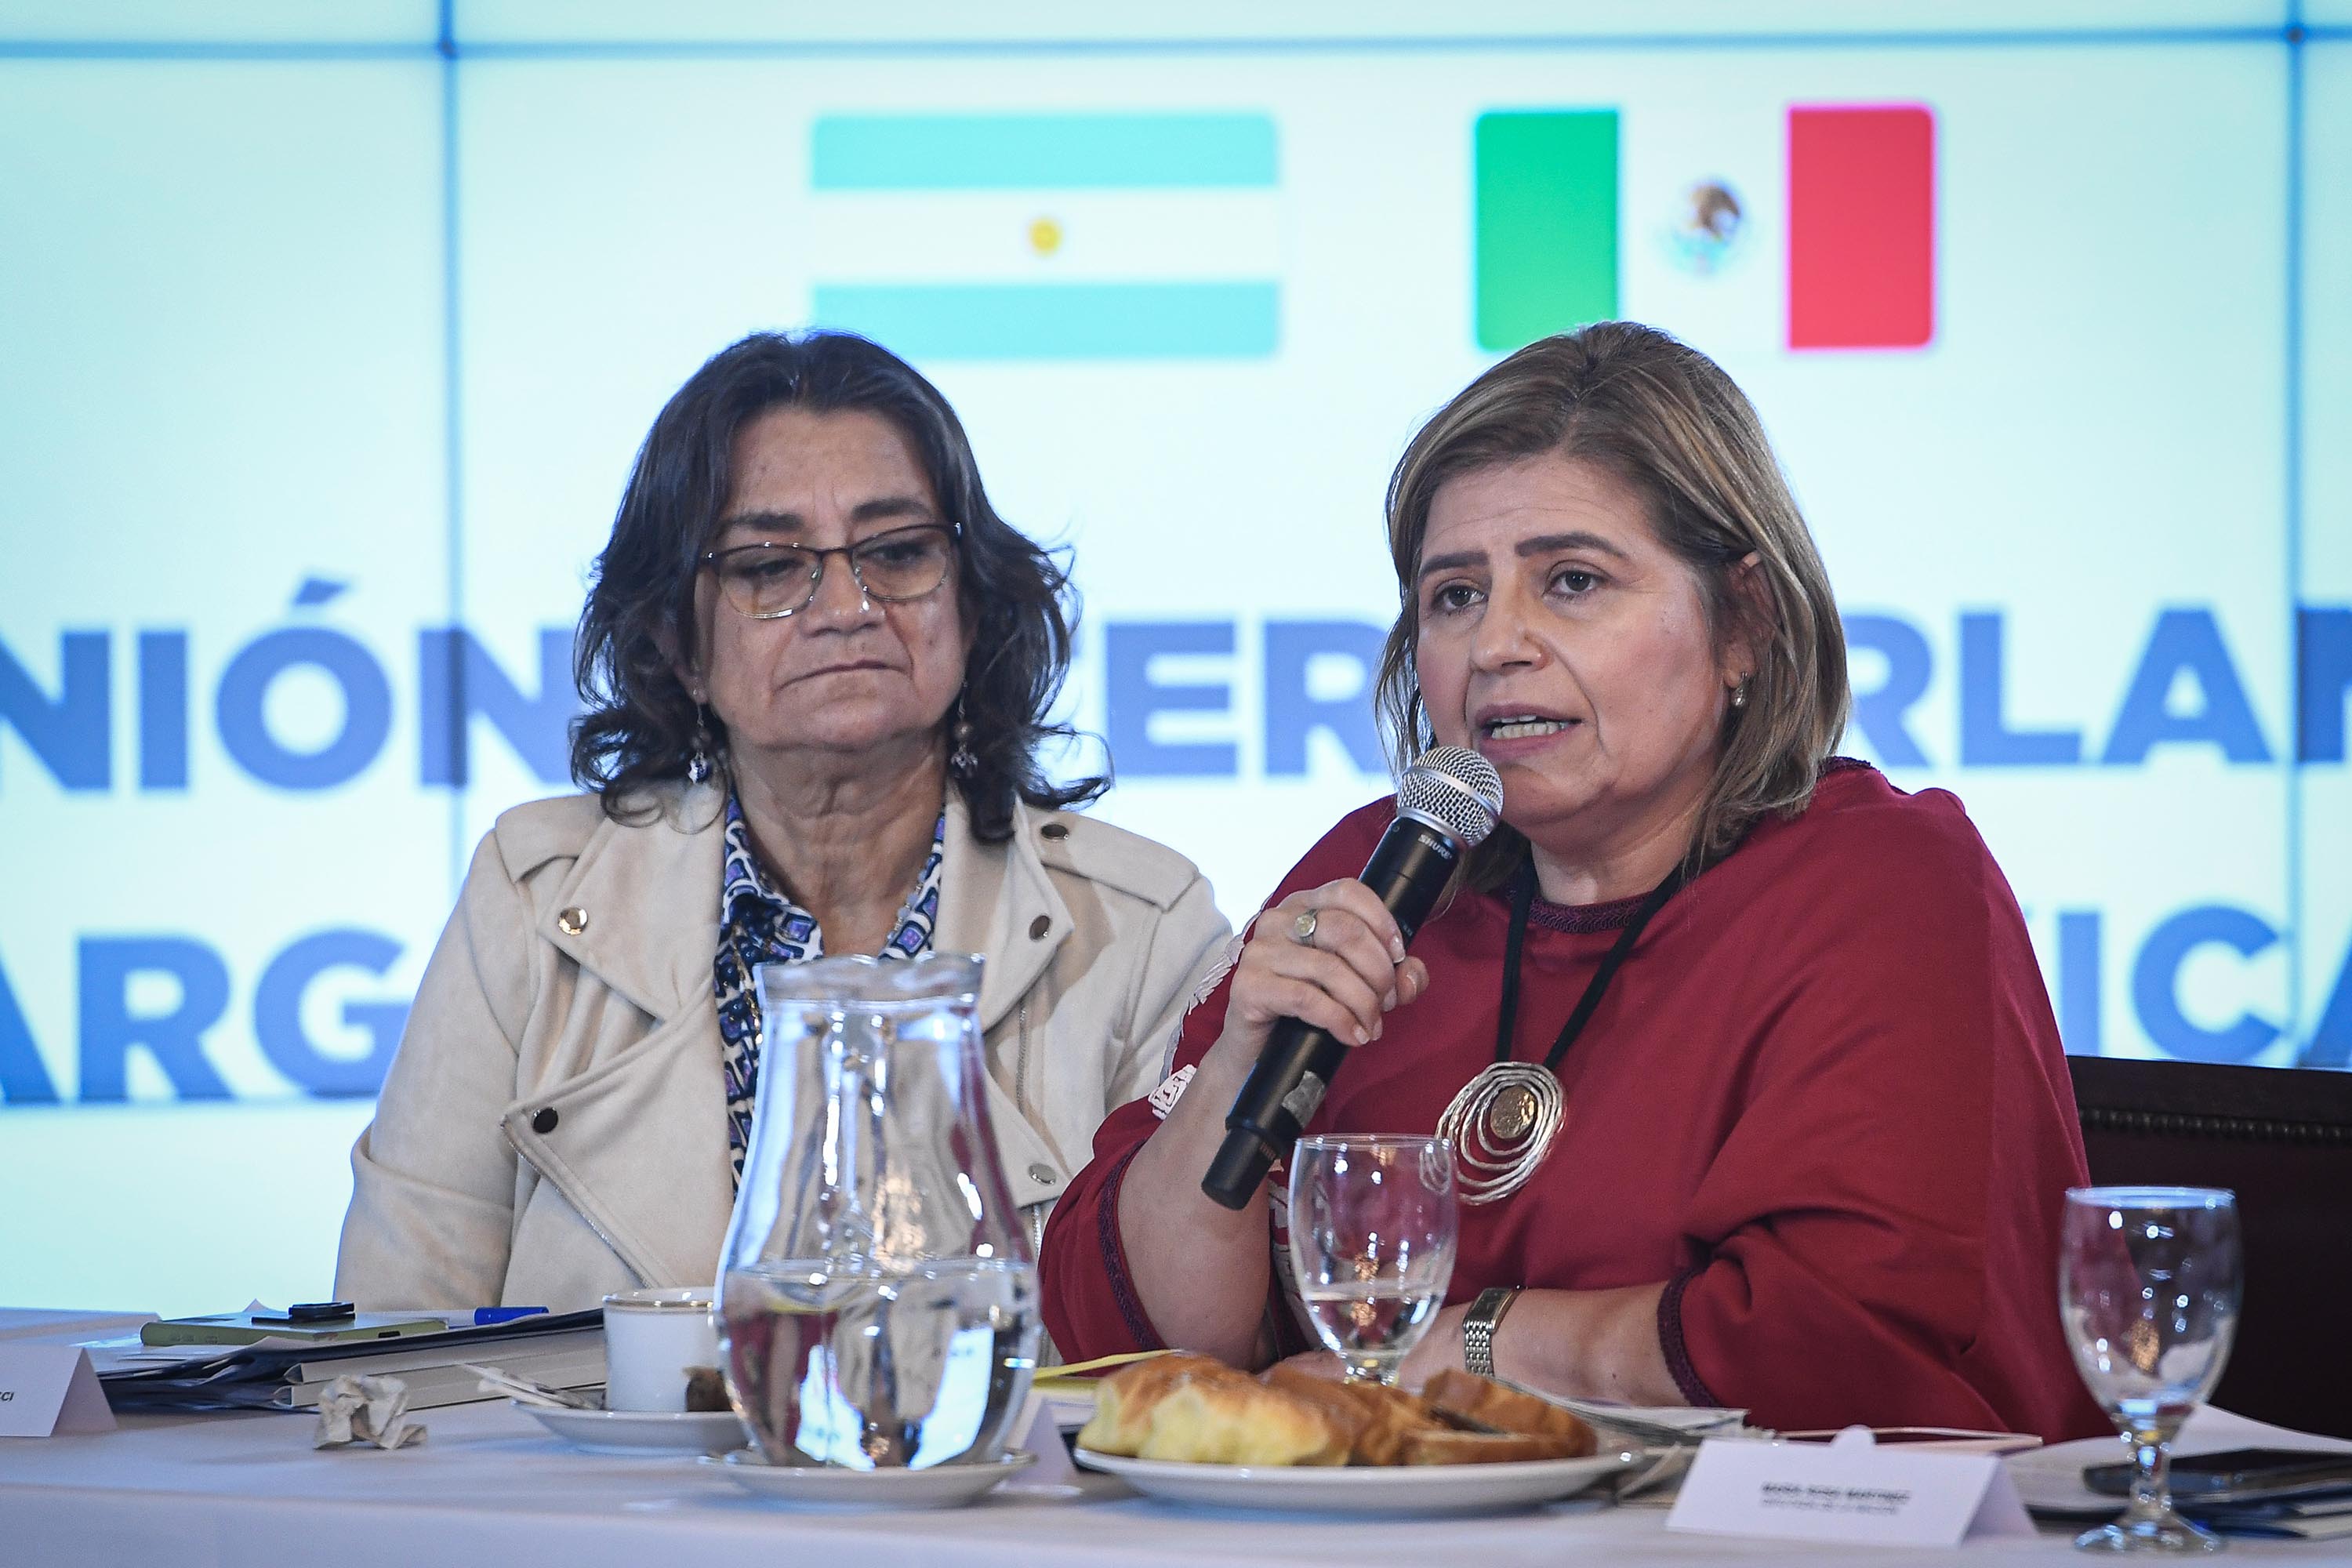 VI Reunión Interparlamentaria Argentina- Mexicana,